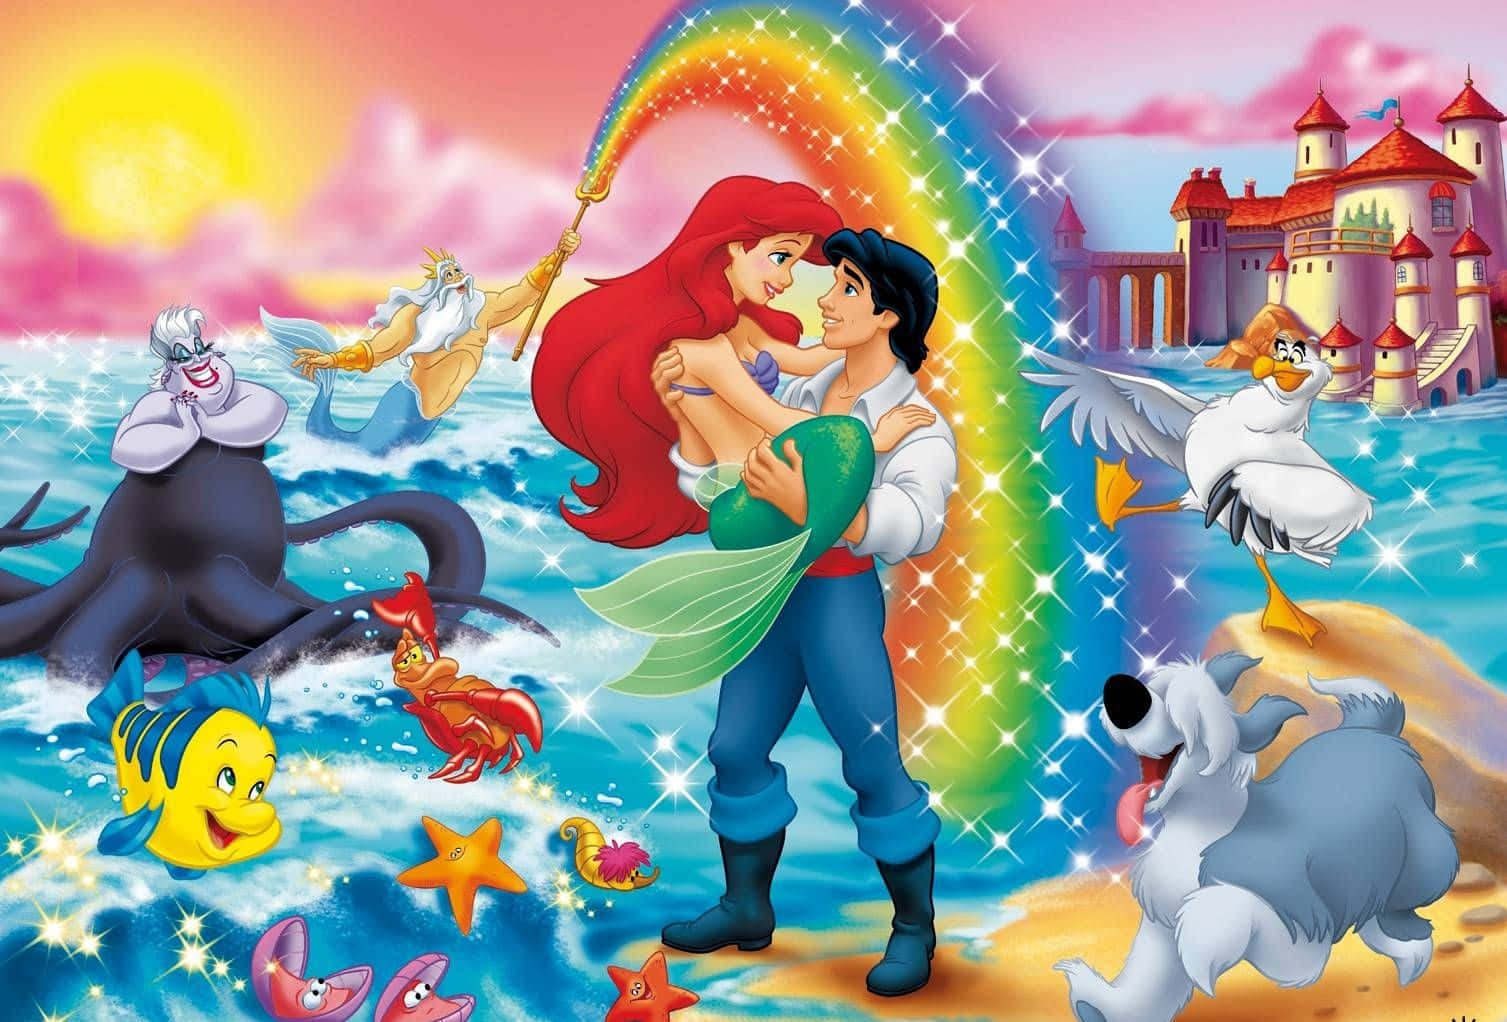 Ariel fra Disneys Den lille Havfrue bringer glæde og eventyr til din skærm. Wallpaper